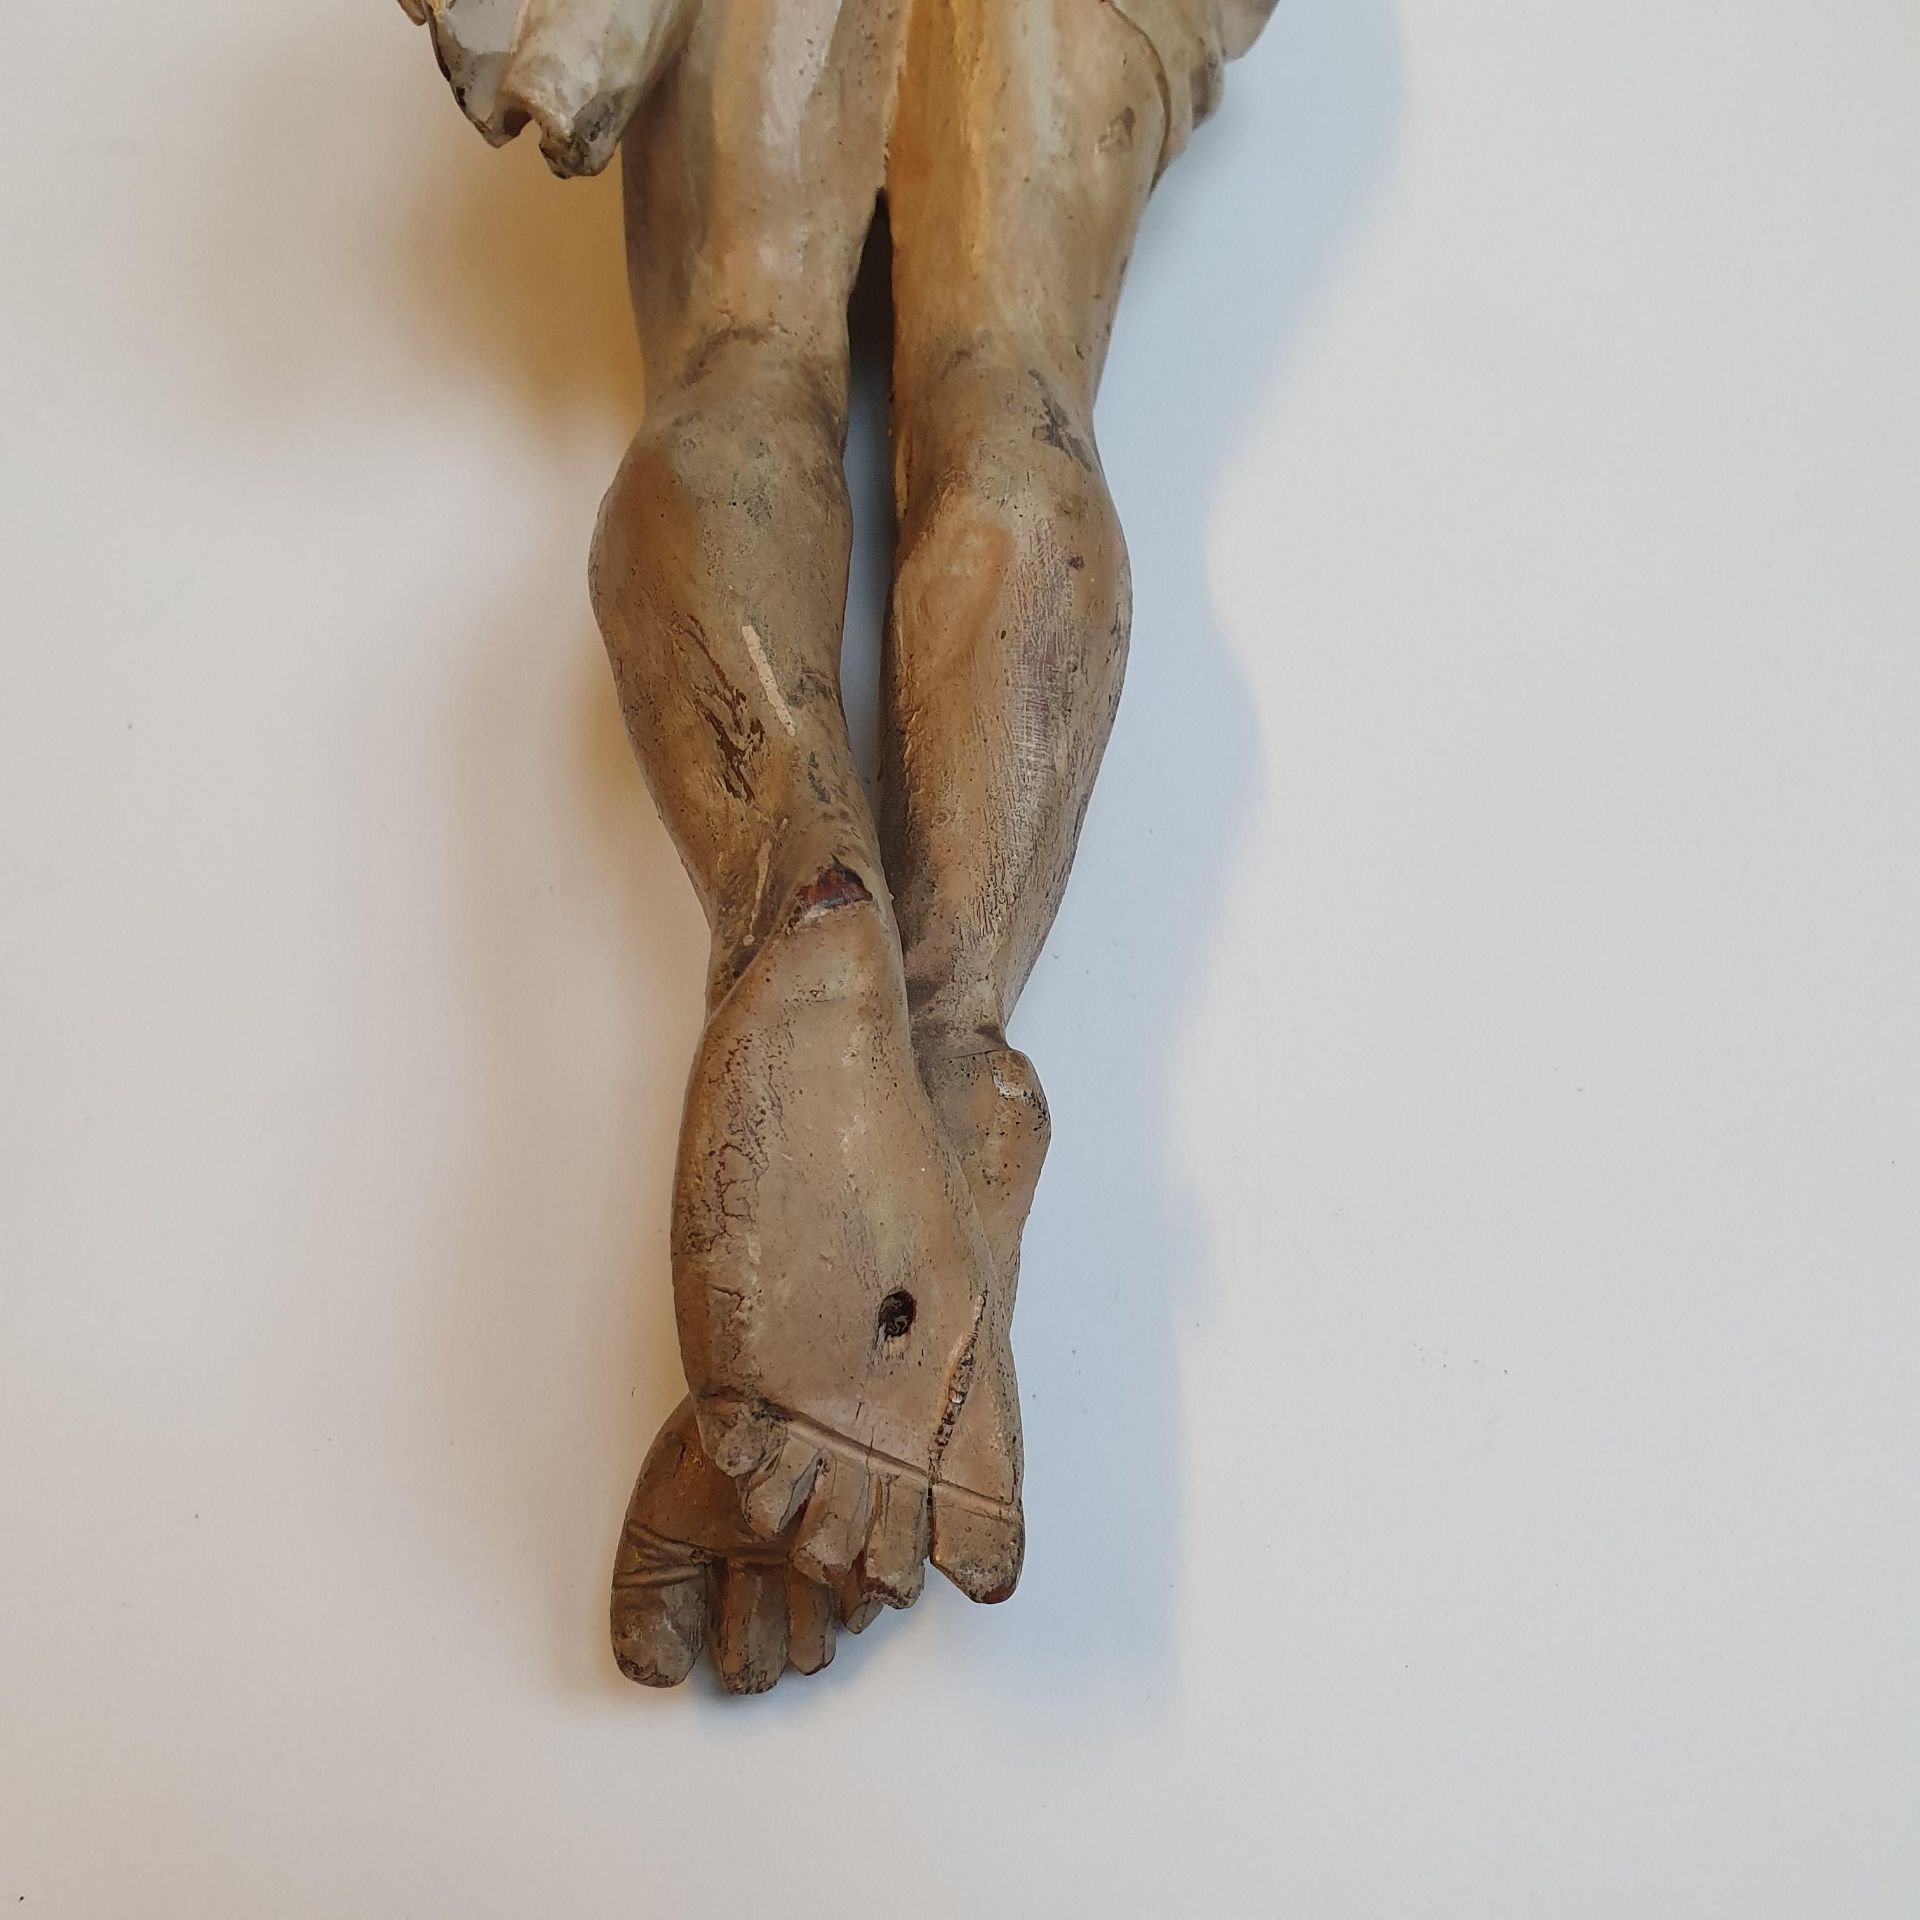 Kruzifix - 19. Jh. oder früher, Holz, vollrund geschnitzt, farbig gefasst, Dars - Image 13 of 13